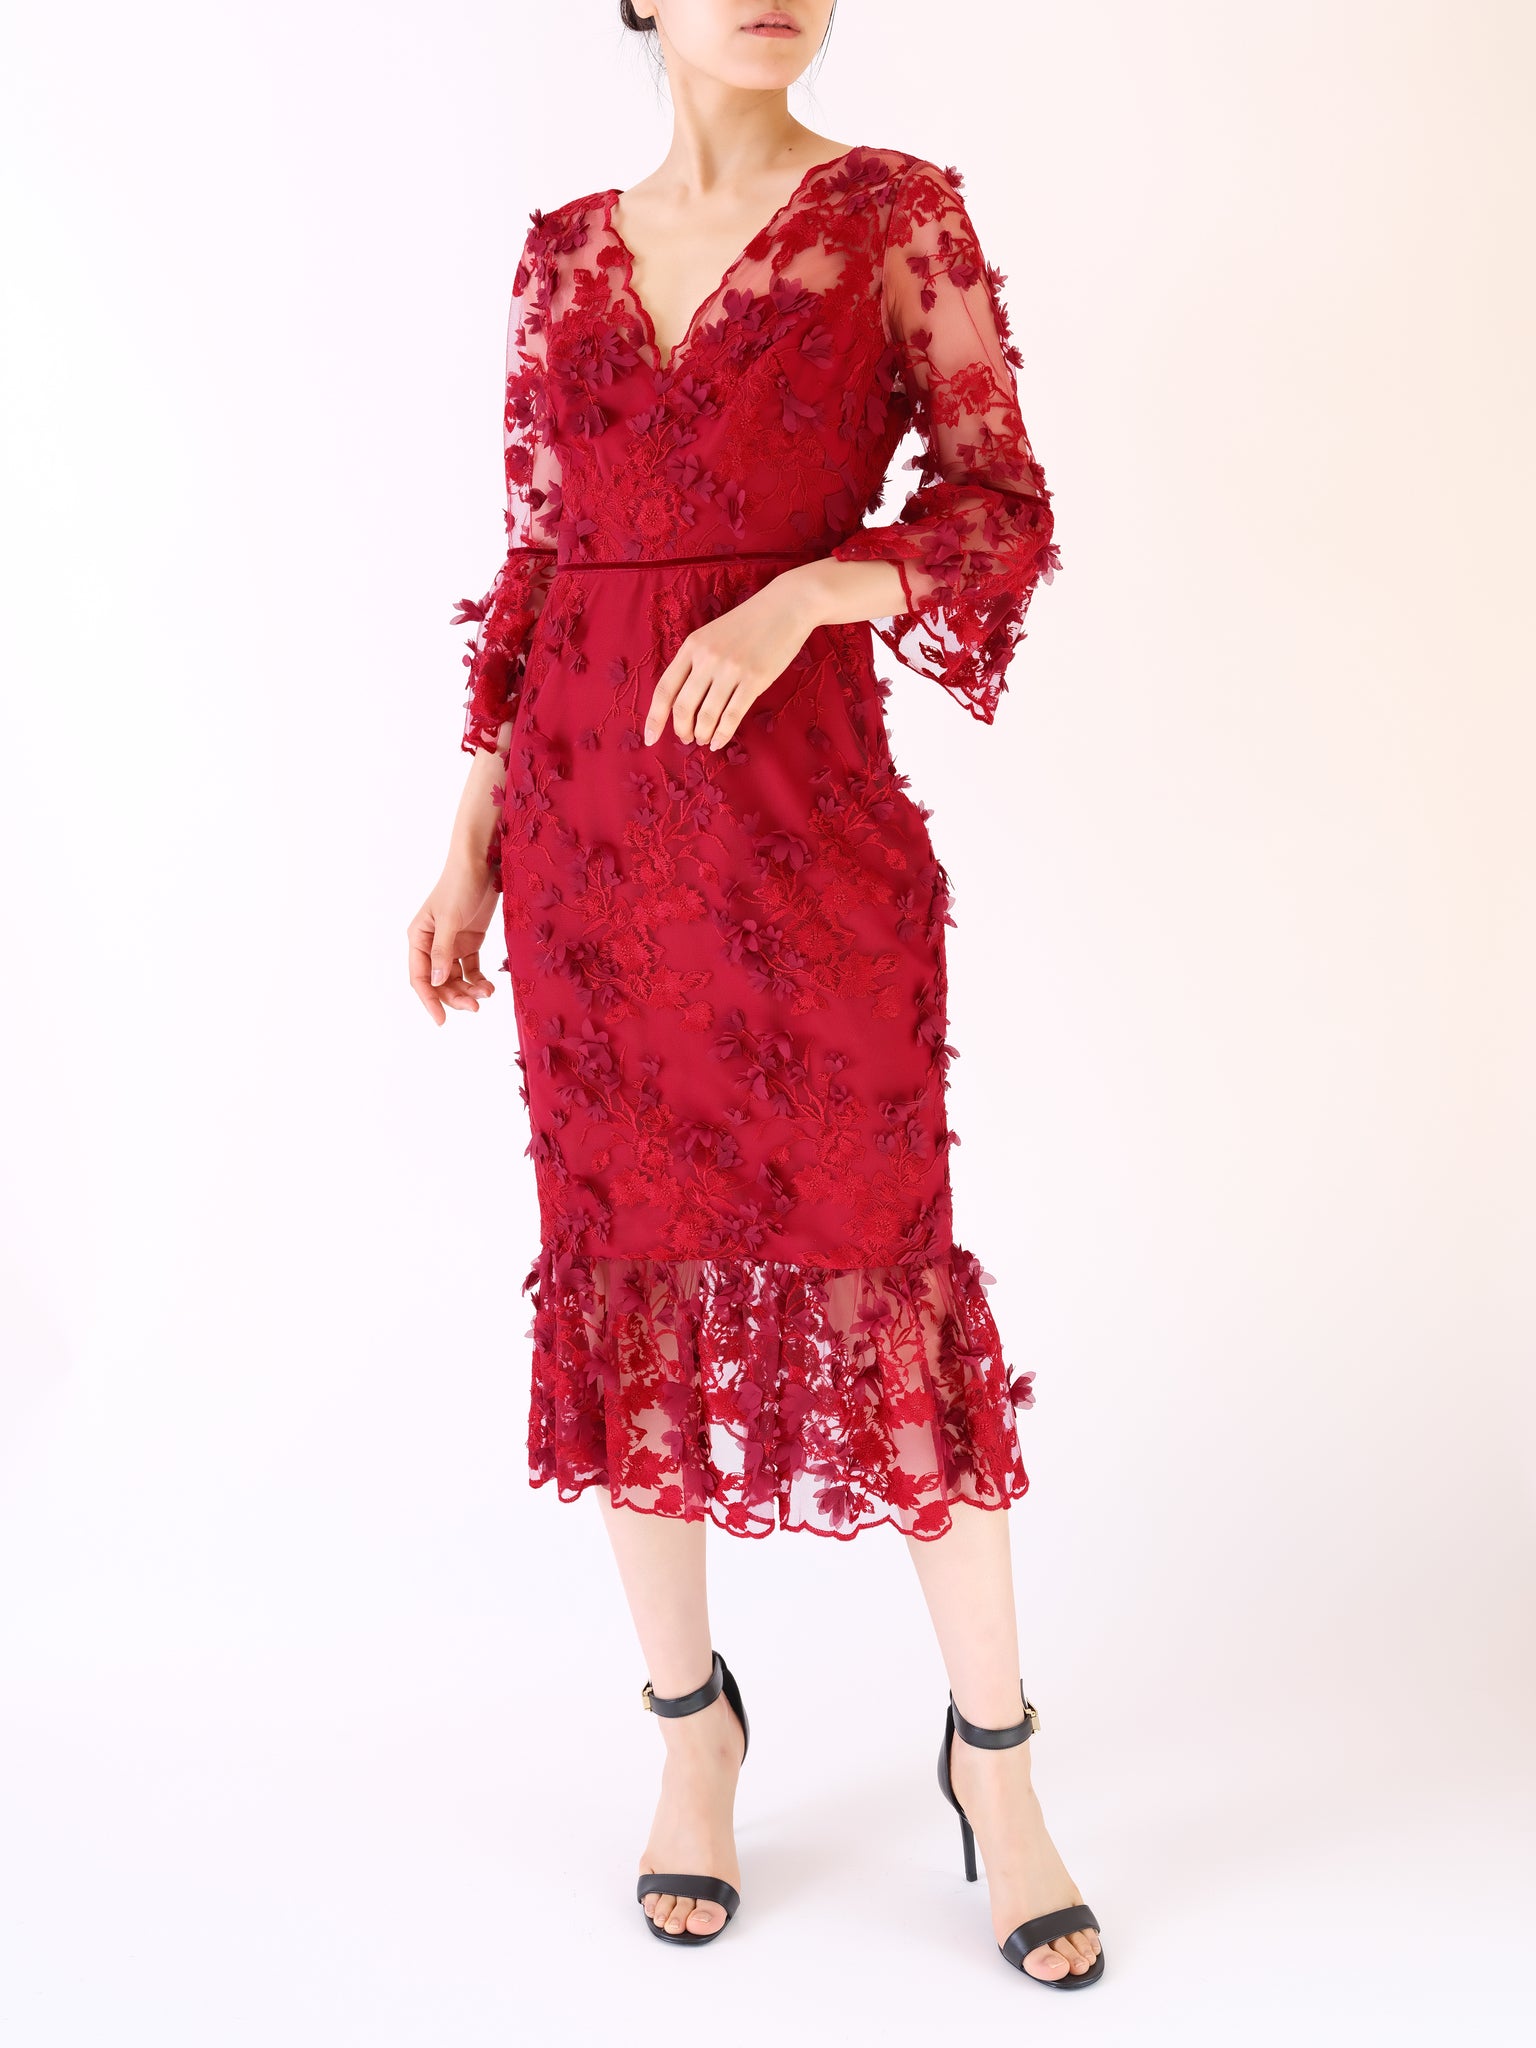 ドドバーオア【DODO BAR OR】 nylon floral lace DRESS 赤